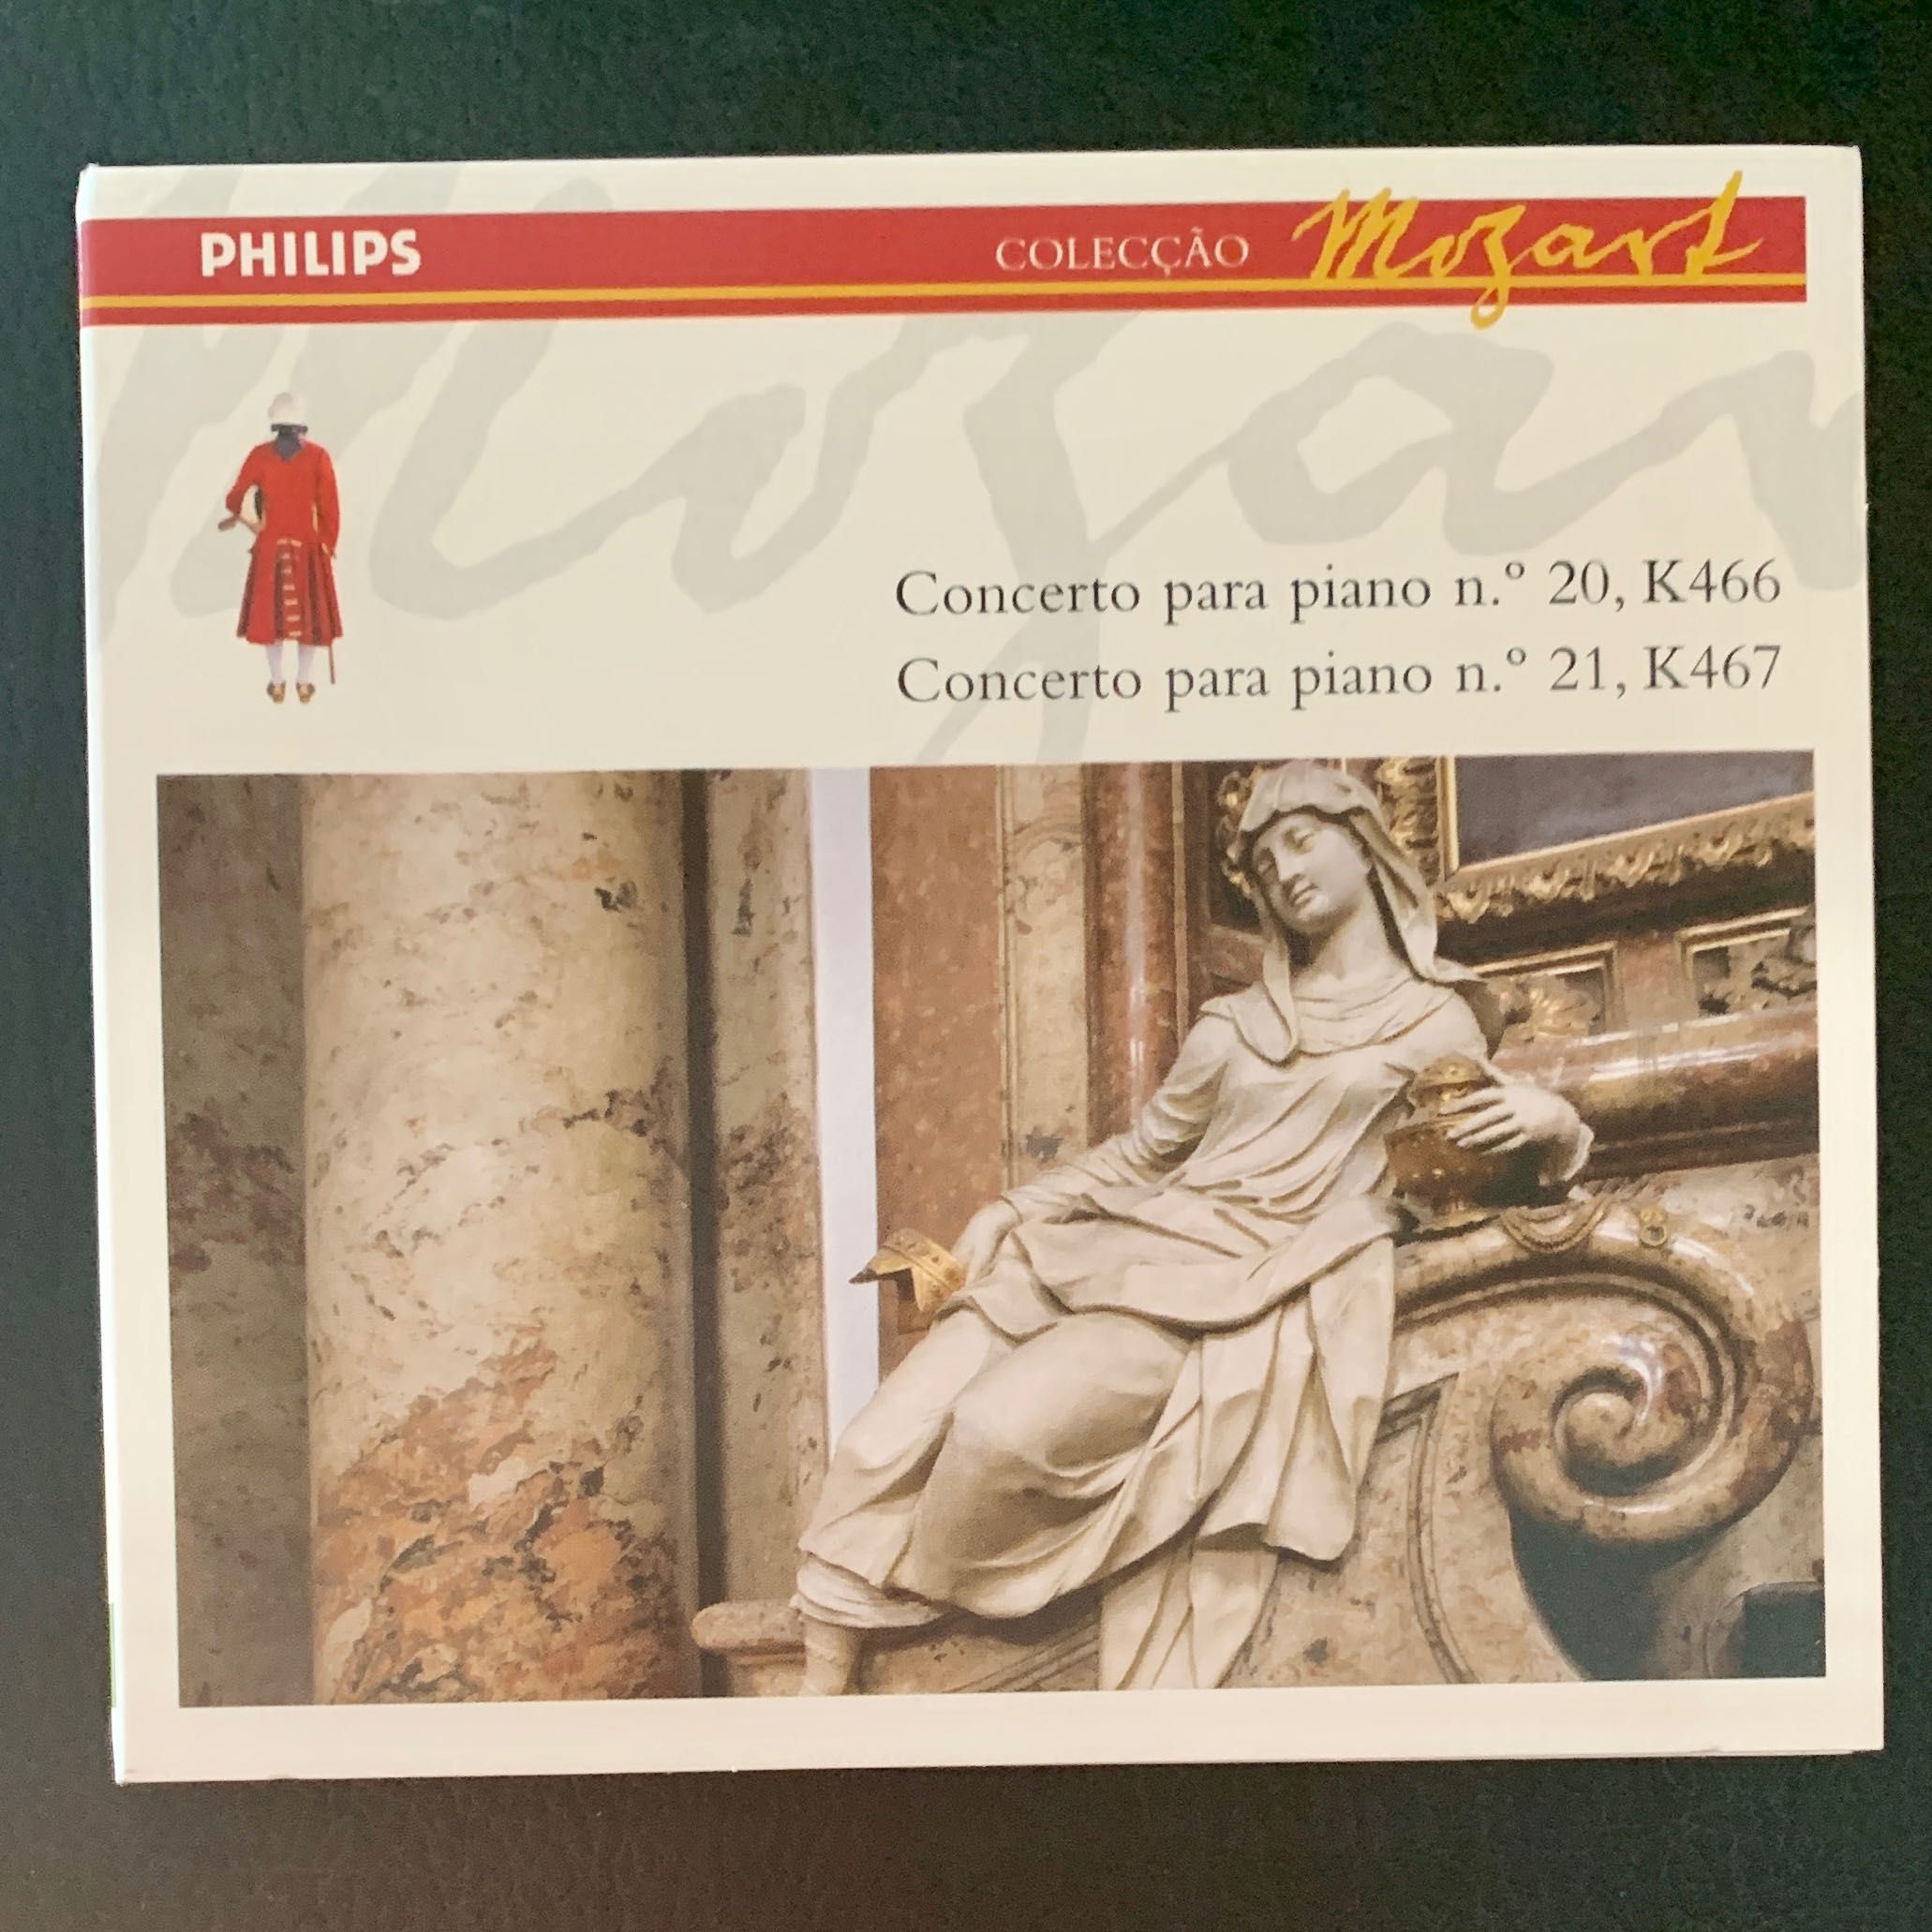 18. CDs clássica: Mozart: sinfonias e concertos (coleção Mozart)